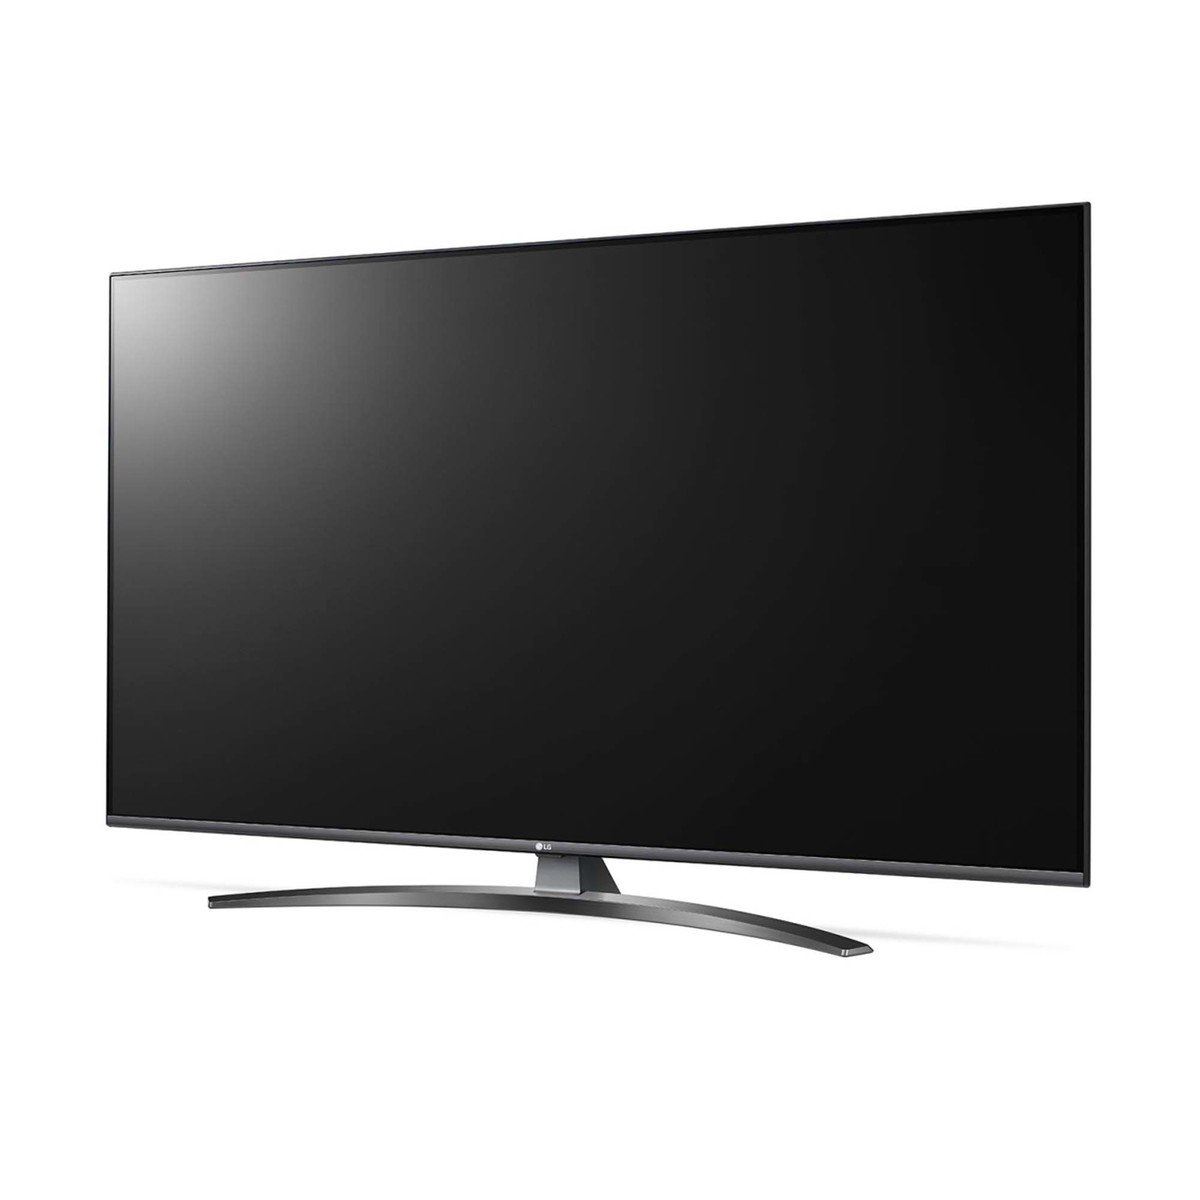 LG 4K Ultra HD Smart LED TV 65UM7660PVA 65"